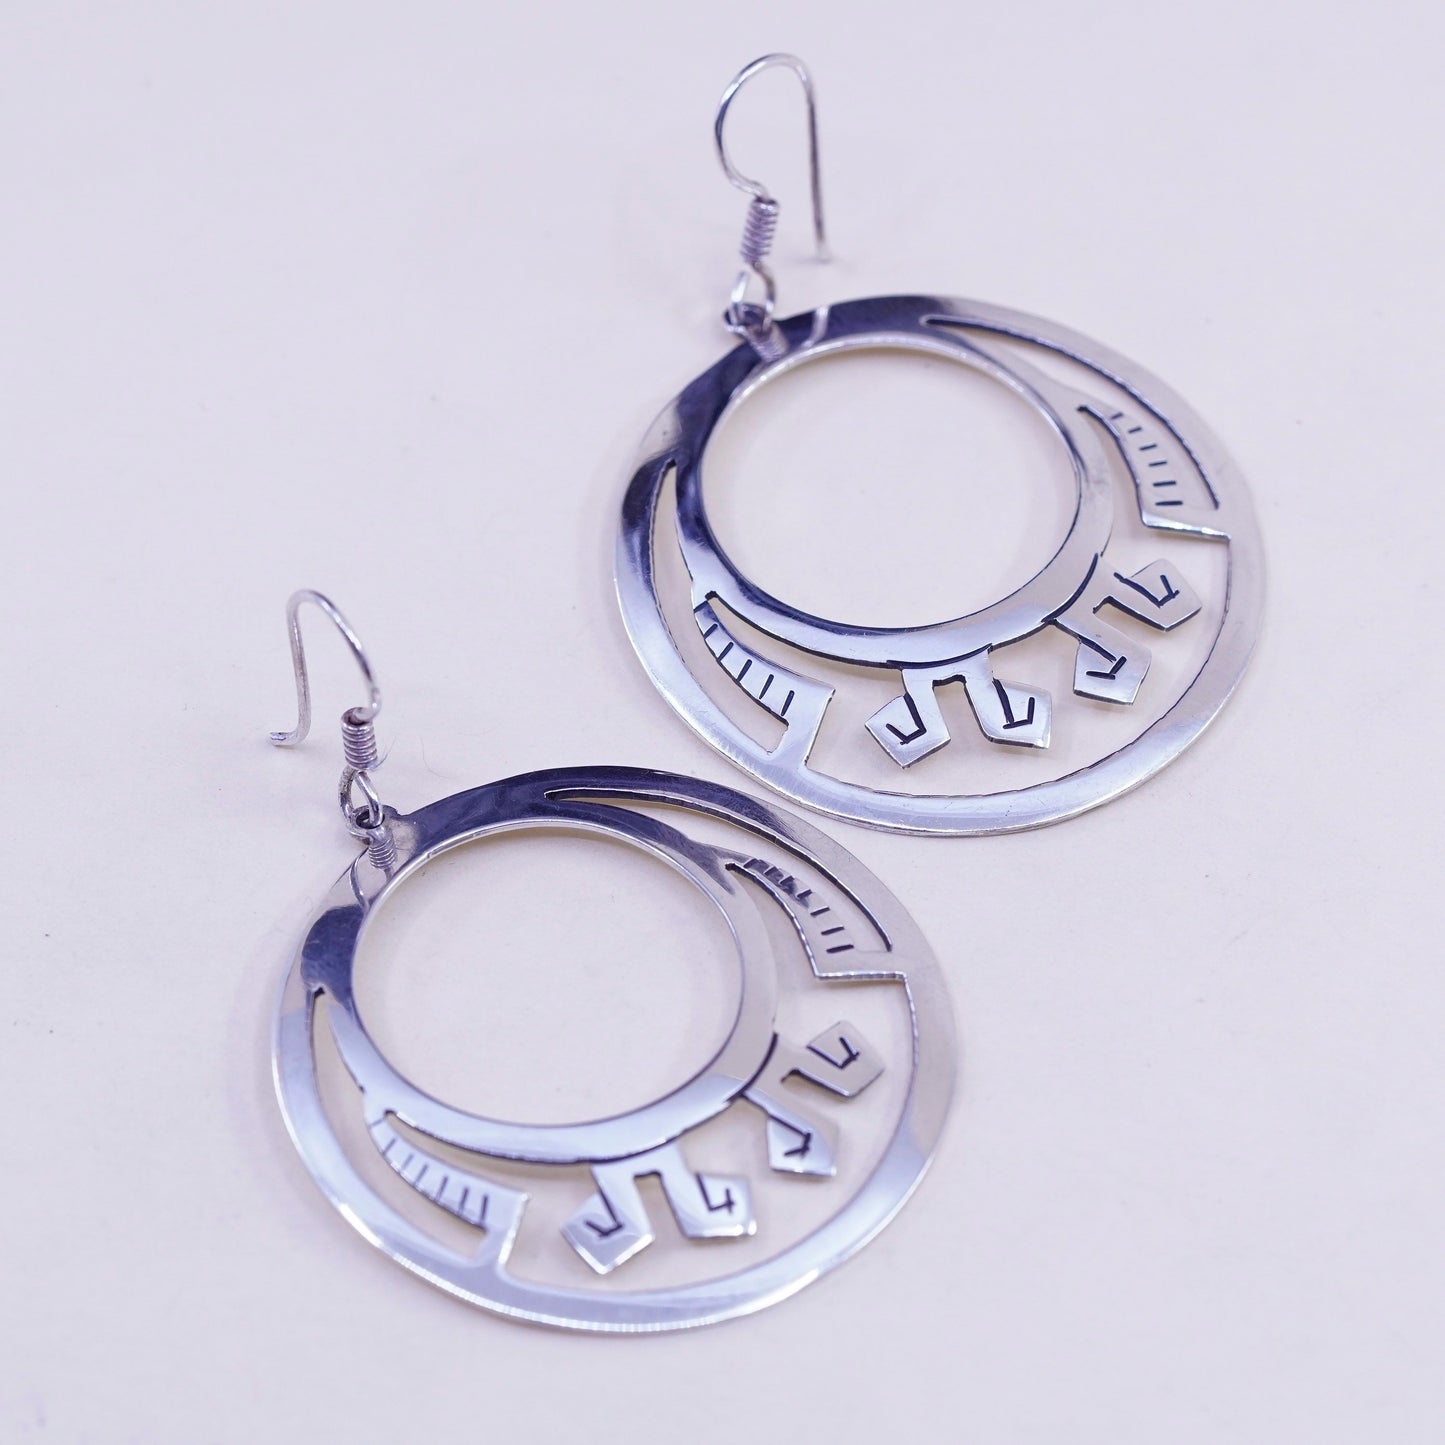 Vintage Sterling silver handmade earrings, 925 filigree circle disc